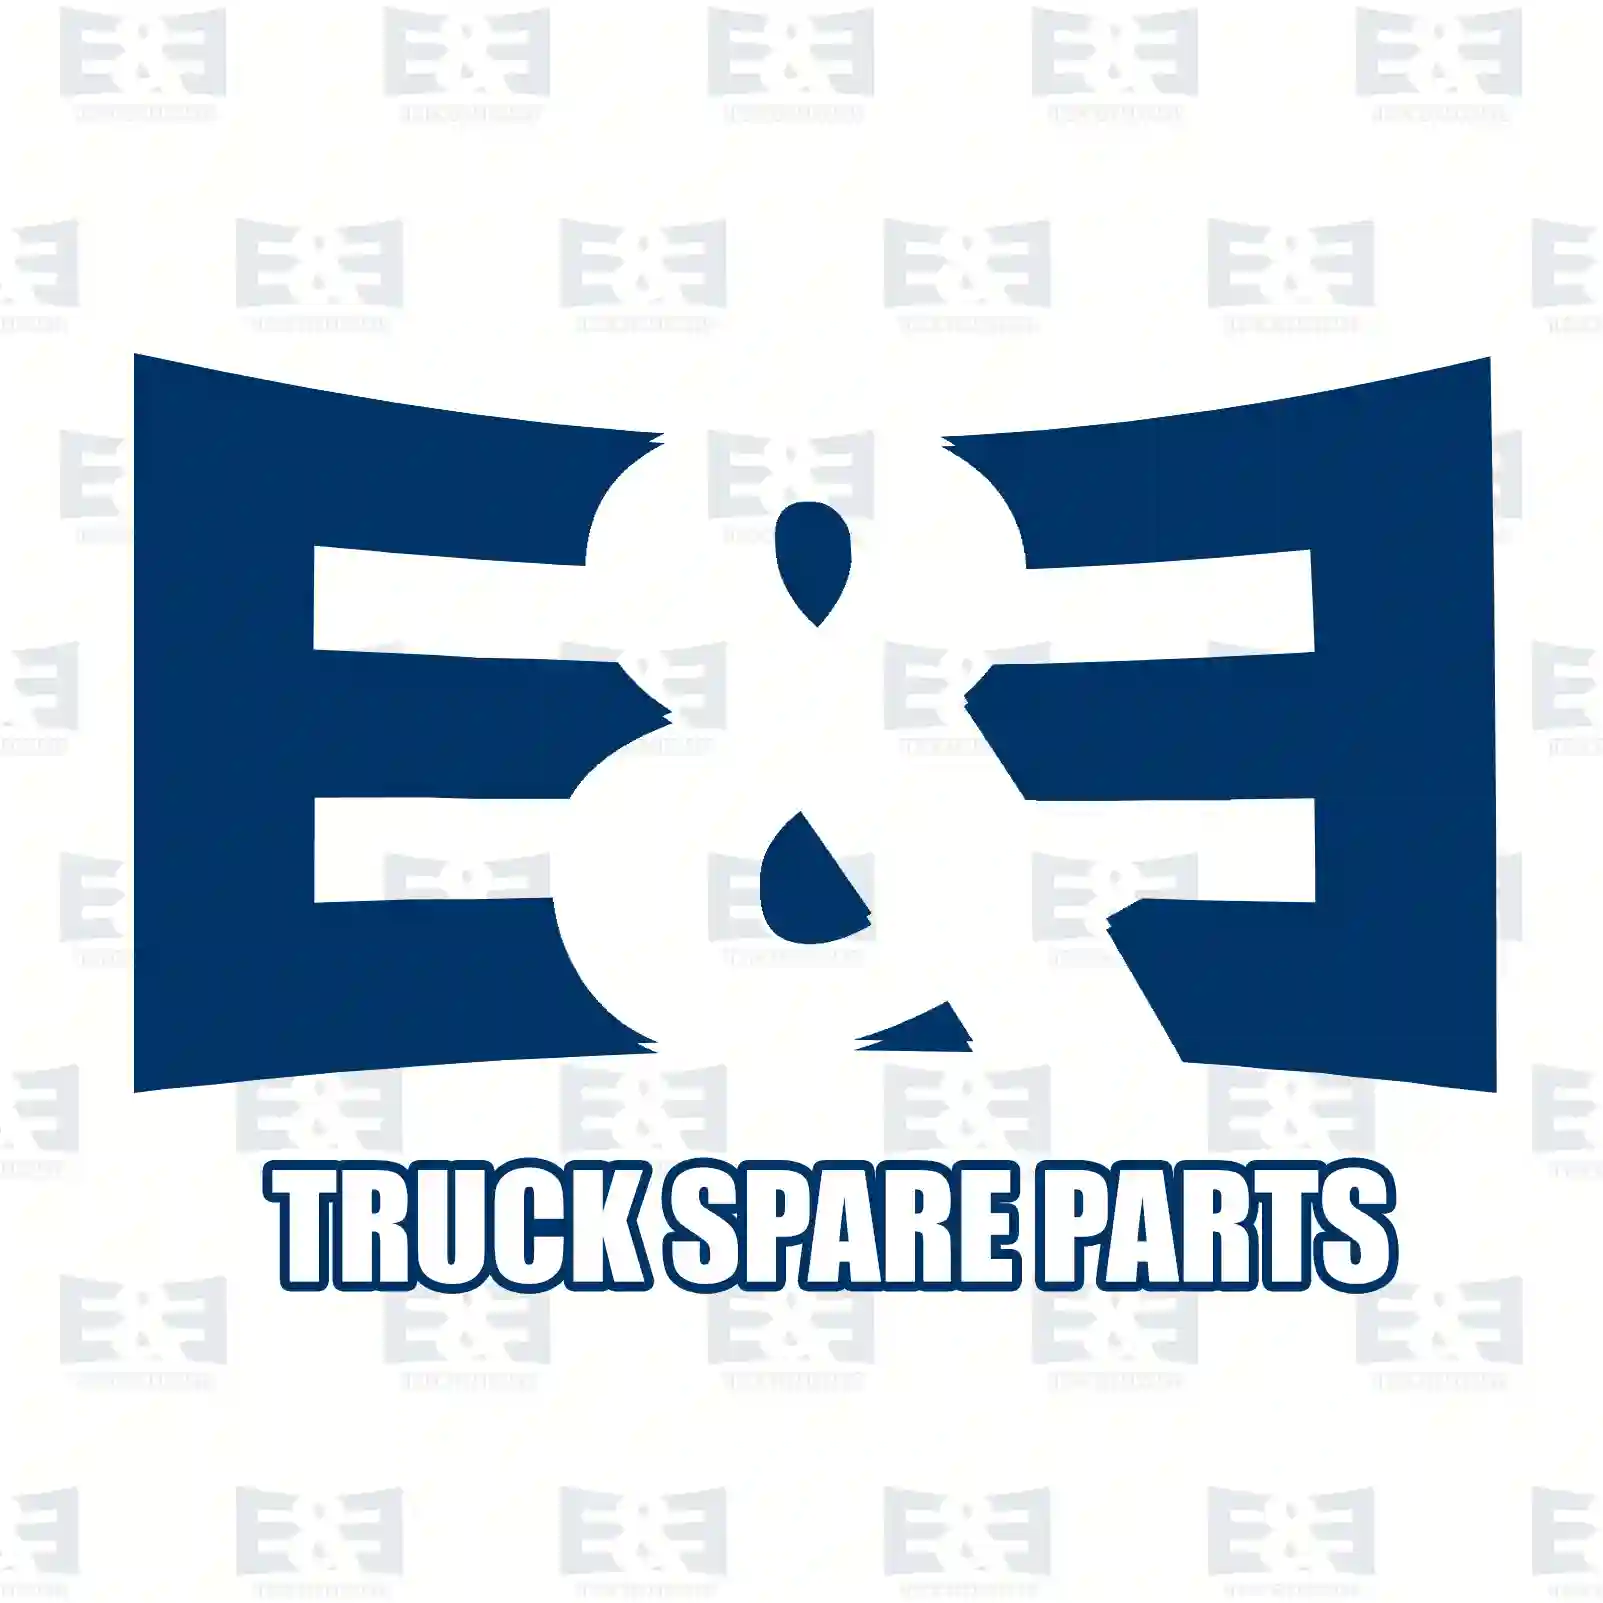 Propeller shaft, 2E2276678, 1335262, 1377028, 1543122, 1796580 ||  2E2276678 E&E Truck Spare Parts | Truck Spare Parts, Auotomotive Spare Parts Propeller shaft, 2E2276678, 1335262, 1377028, 1543122, 1796580 ||  2E2276678 E&E Truck Spare Parts | Truck Spare Parts, Auotomotive Spare Parts